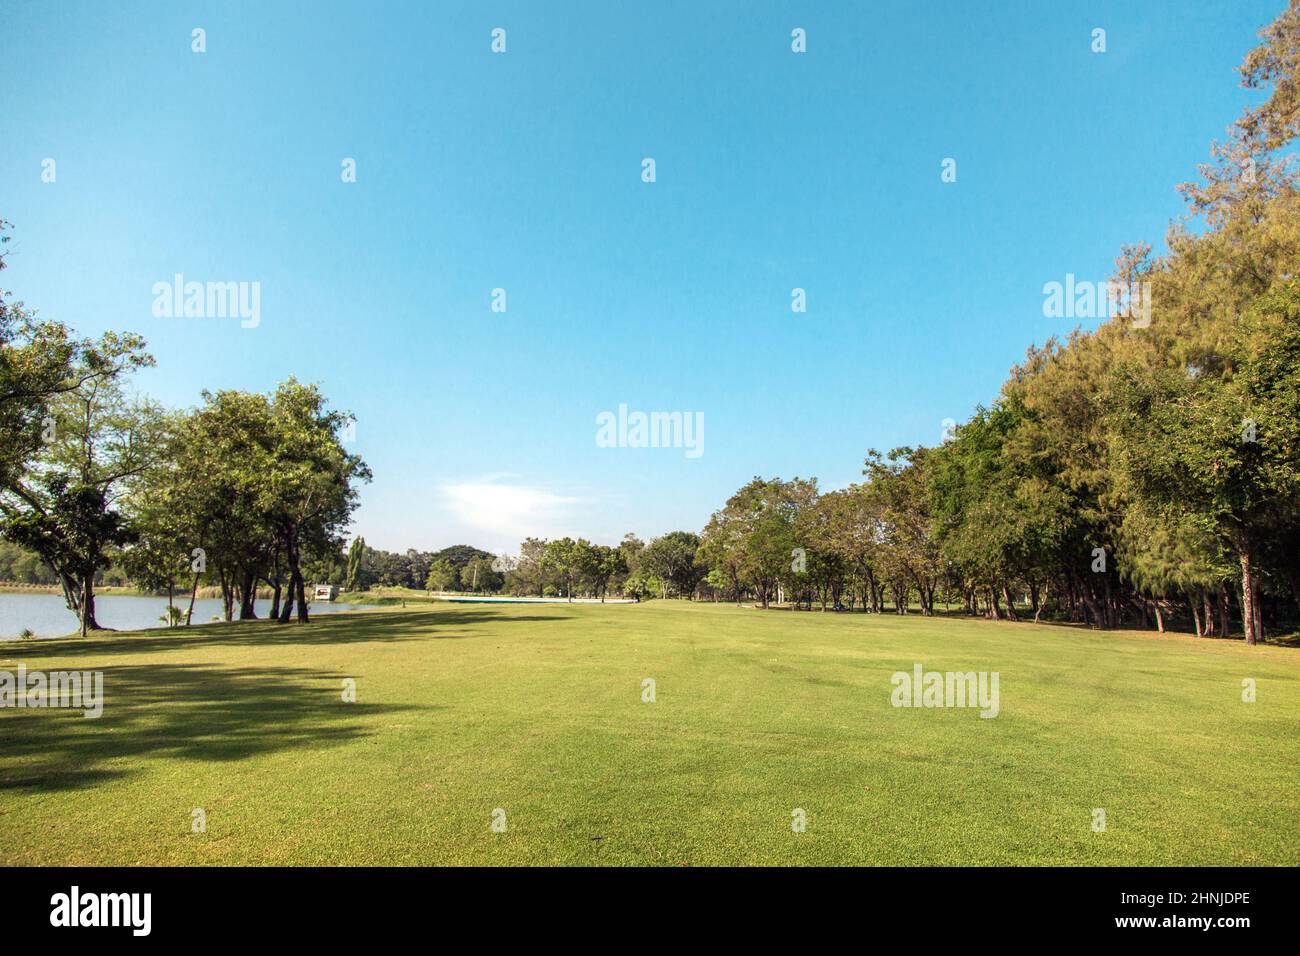 terrain de golf green way pour l'arrière-plan. Le golf est un sport de plein air célèbre et utilise beaucoup de terres et d'arbres. Banque D'Images